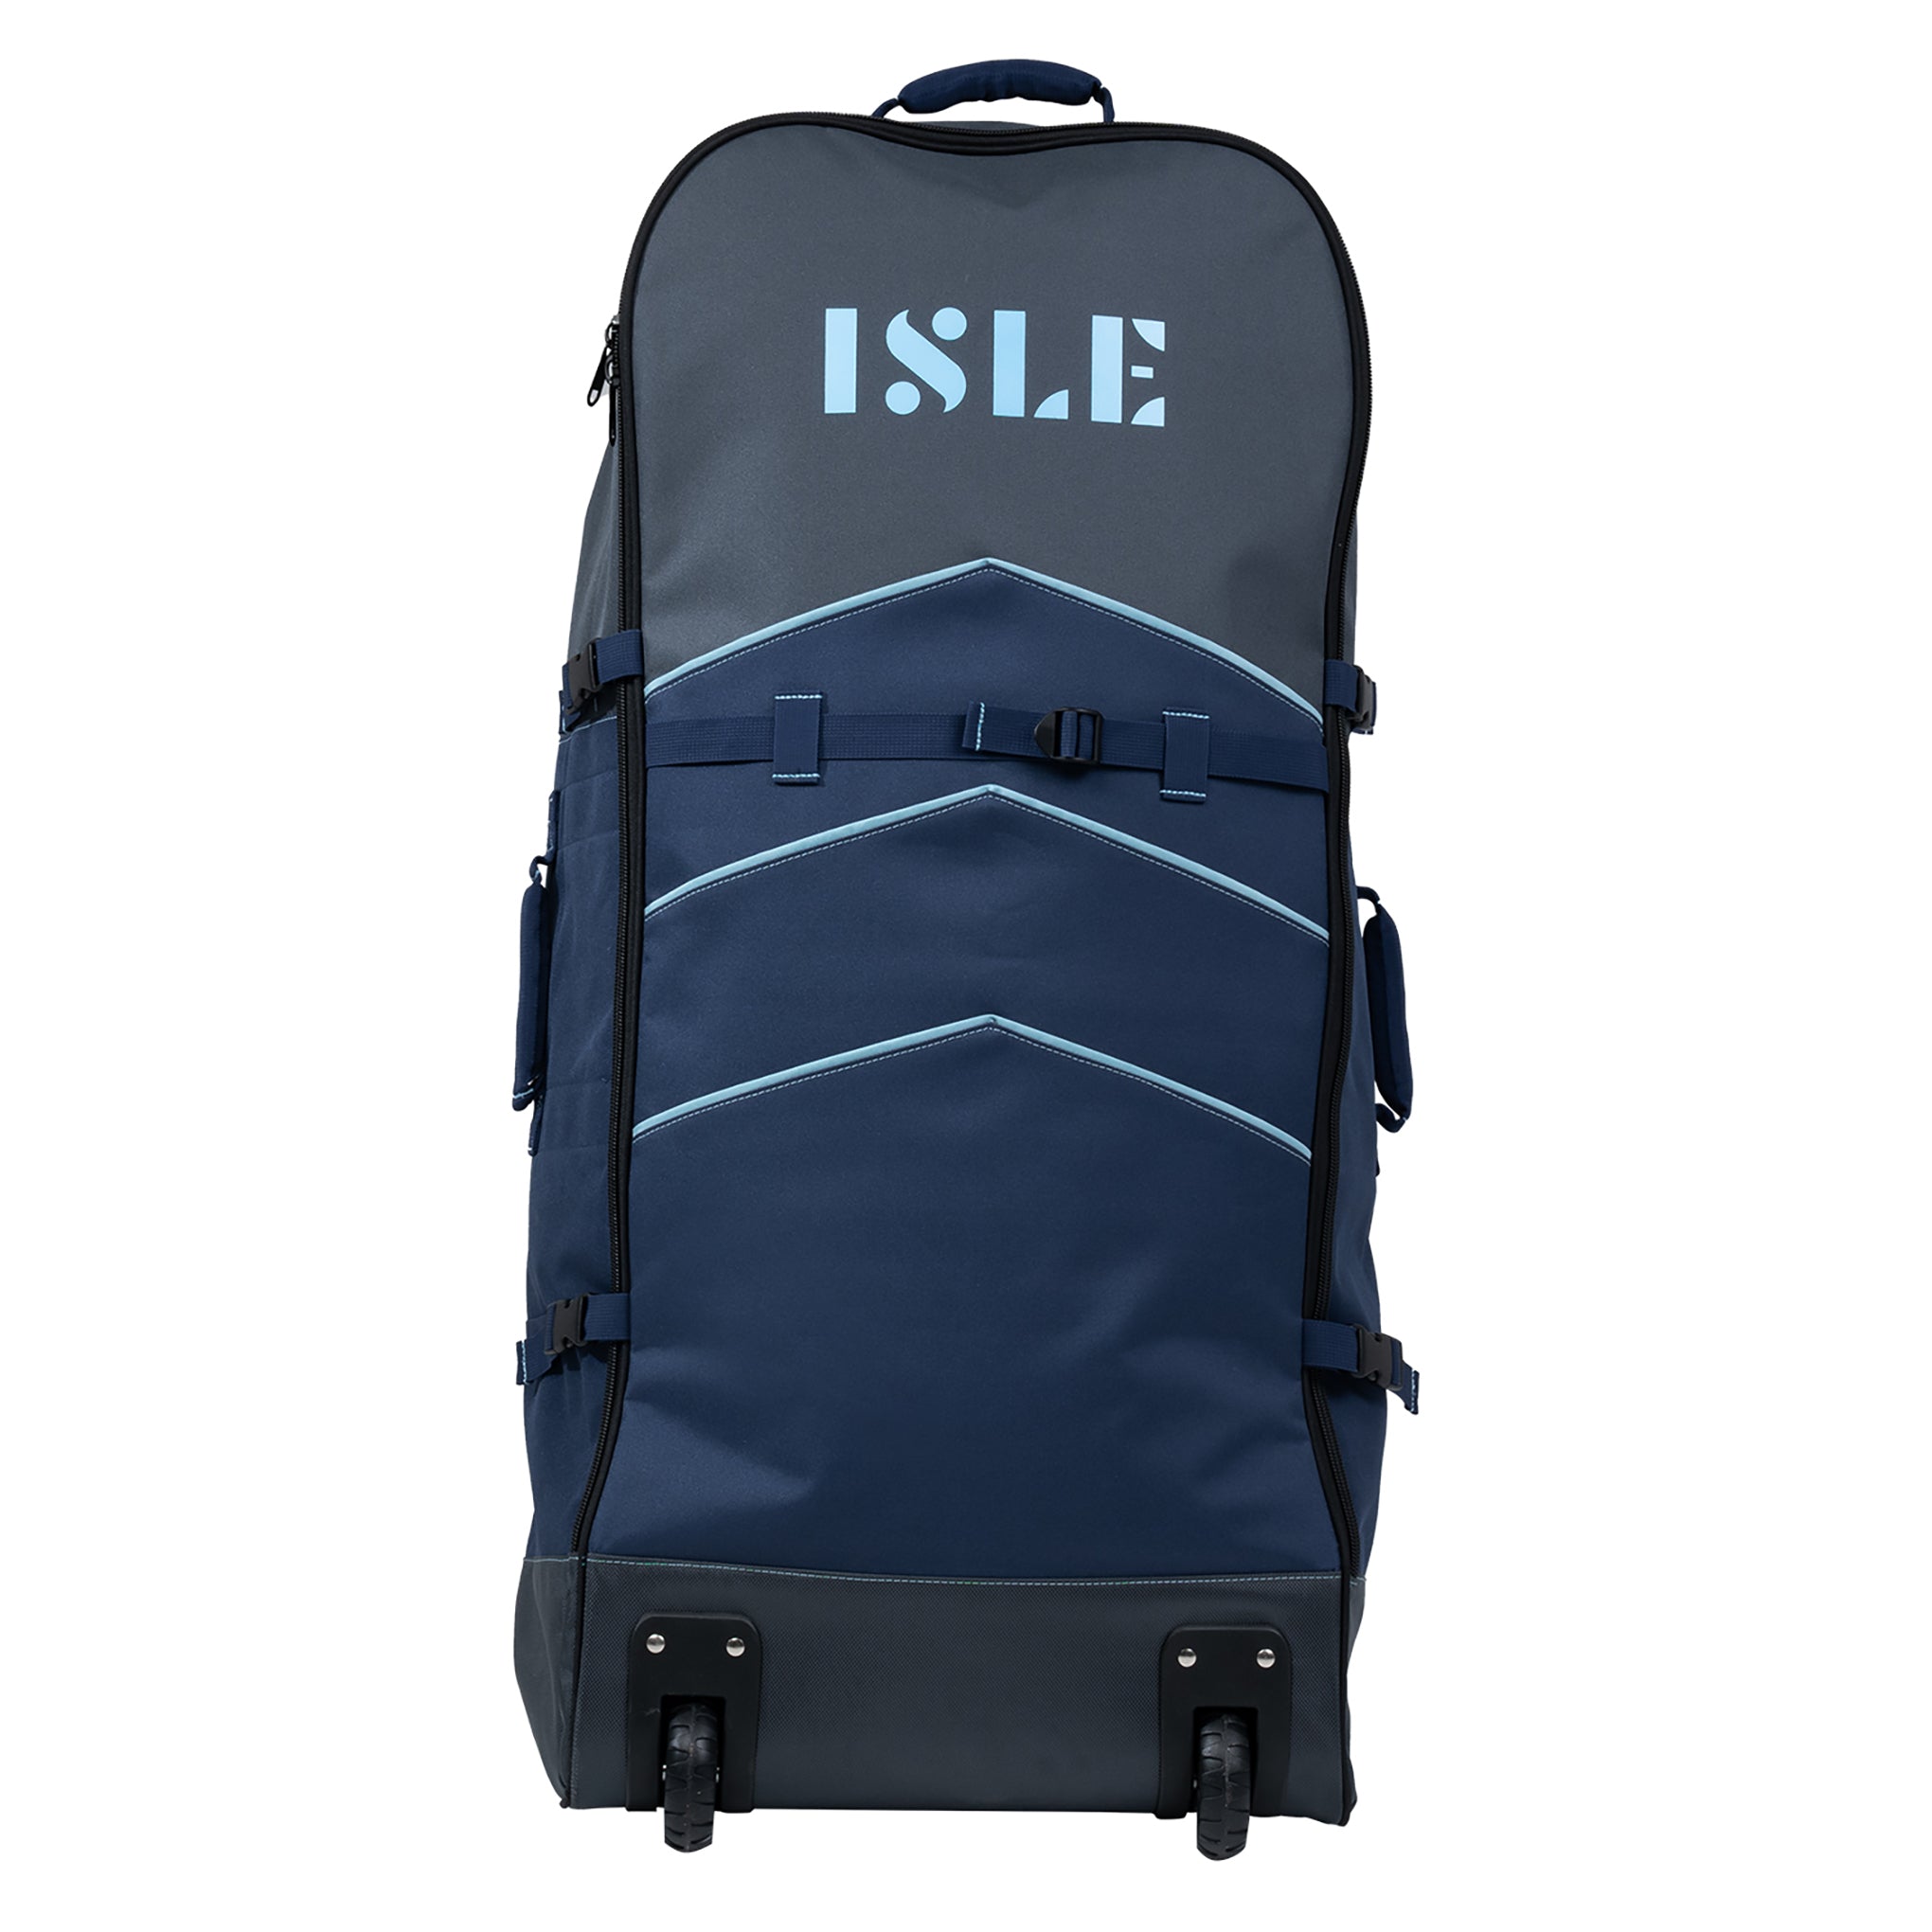 Pro Series Wheelie Backpack